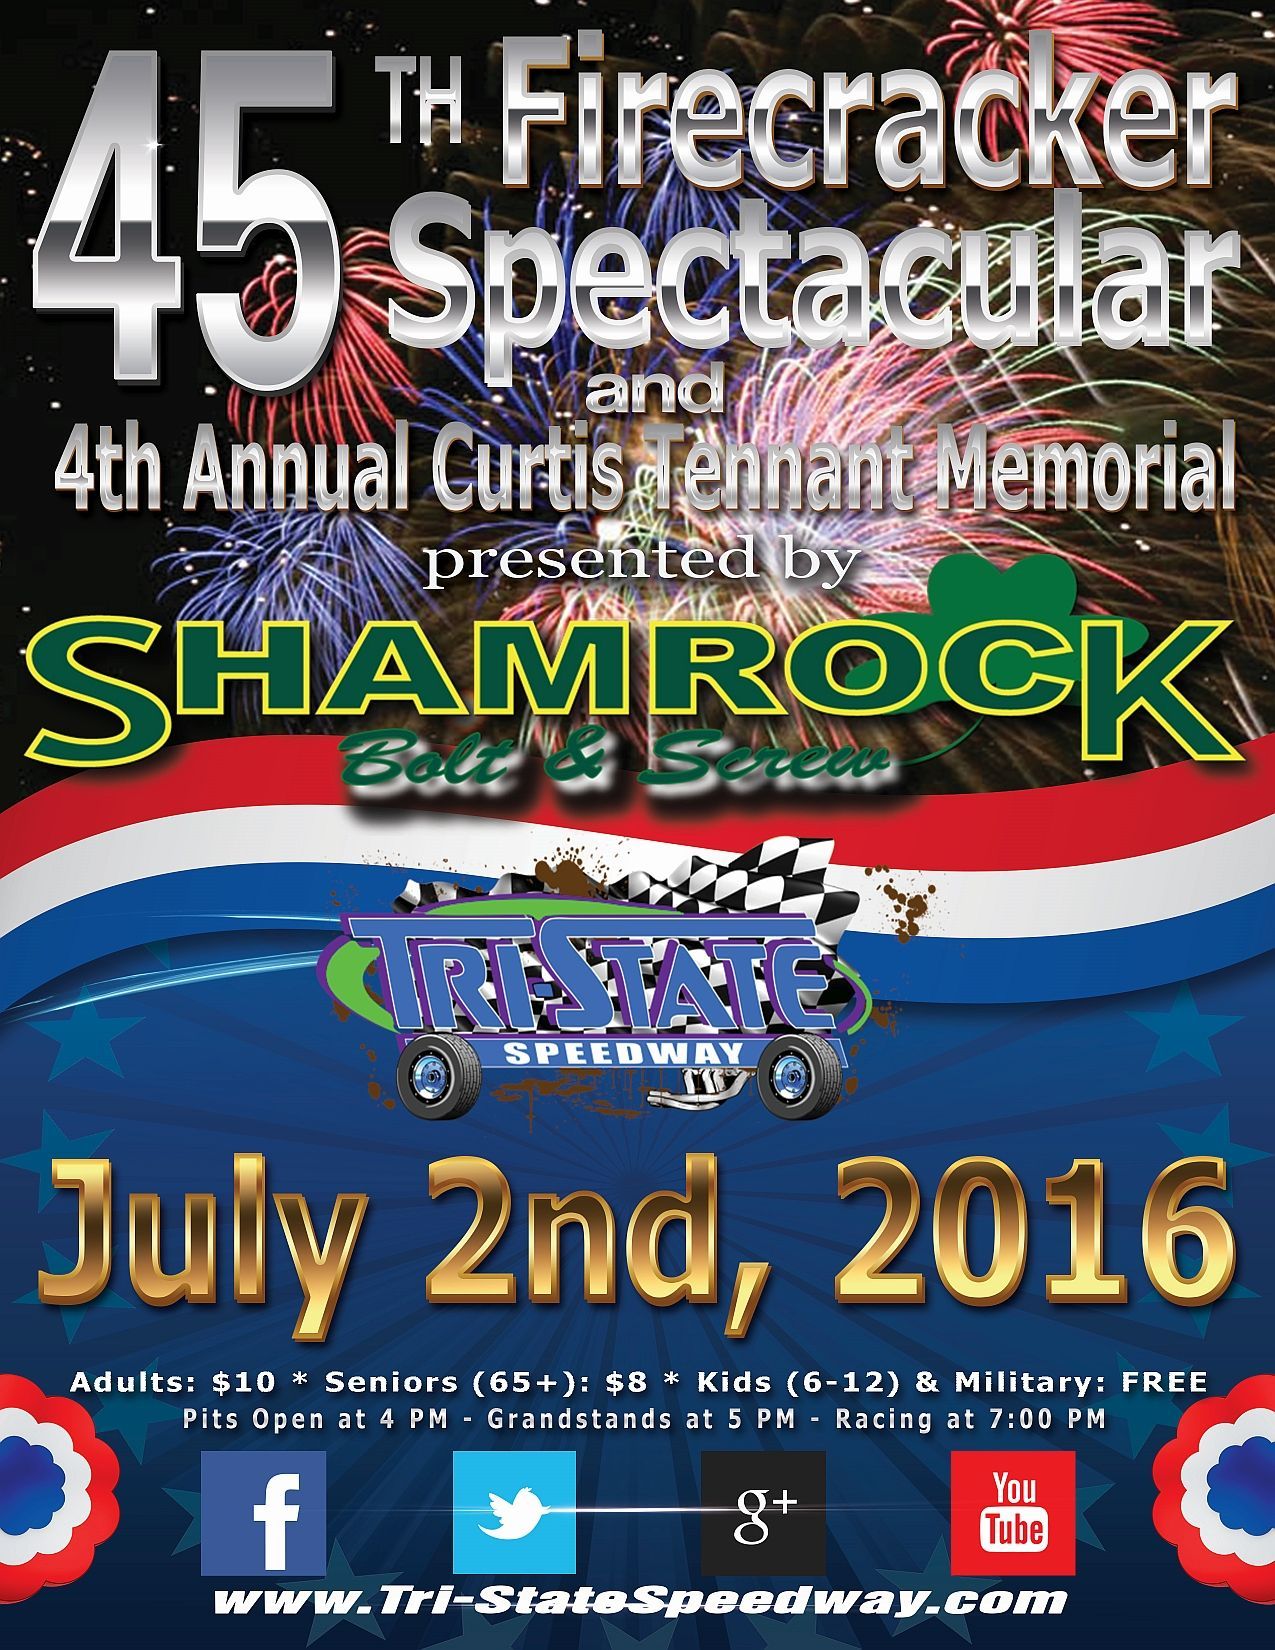 45th Annual Firecracker Spectacular & 4th Annual Curtis Tennant Memorial Races